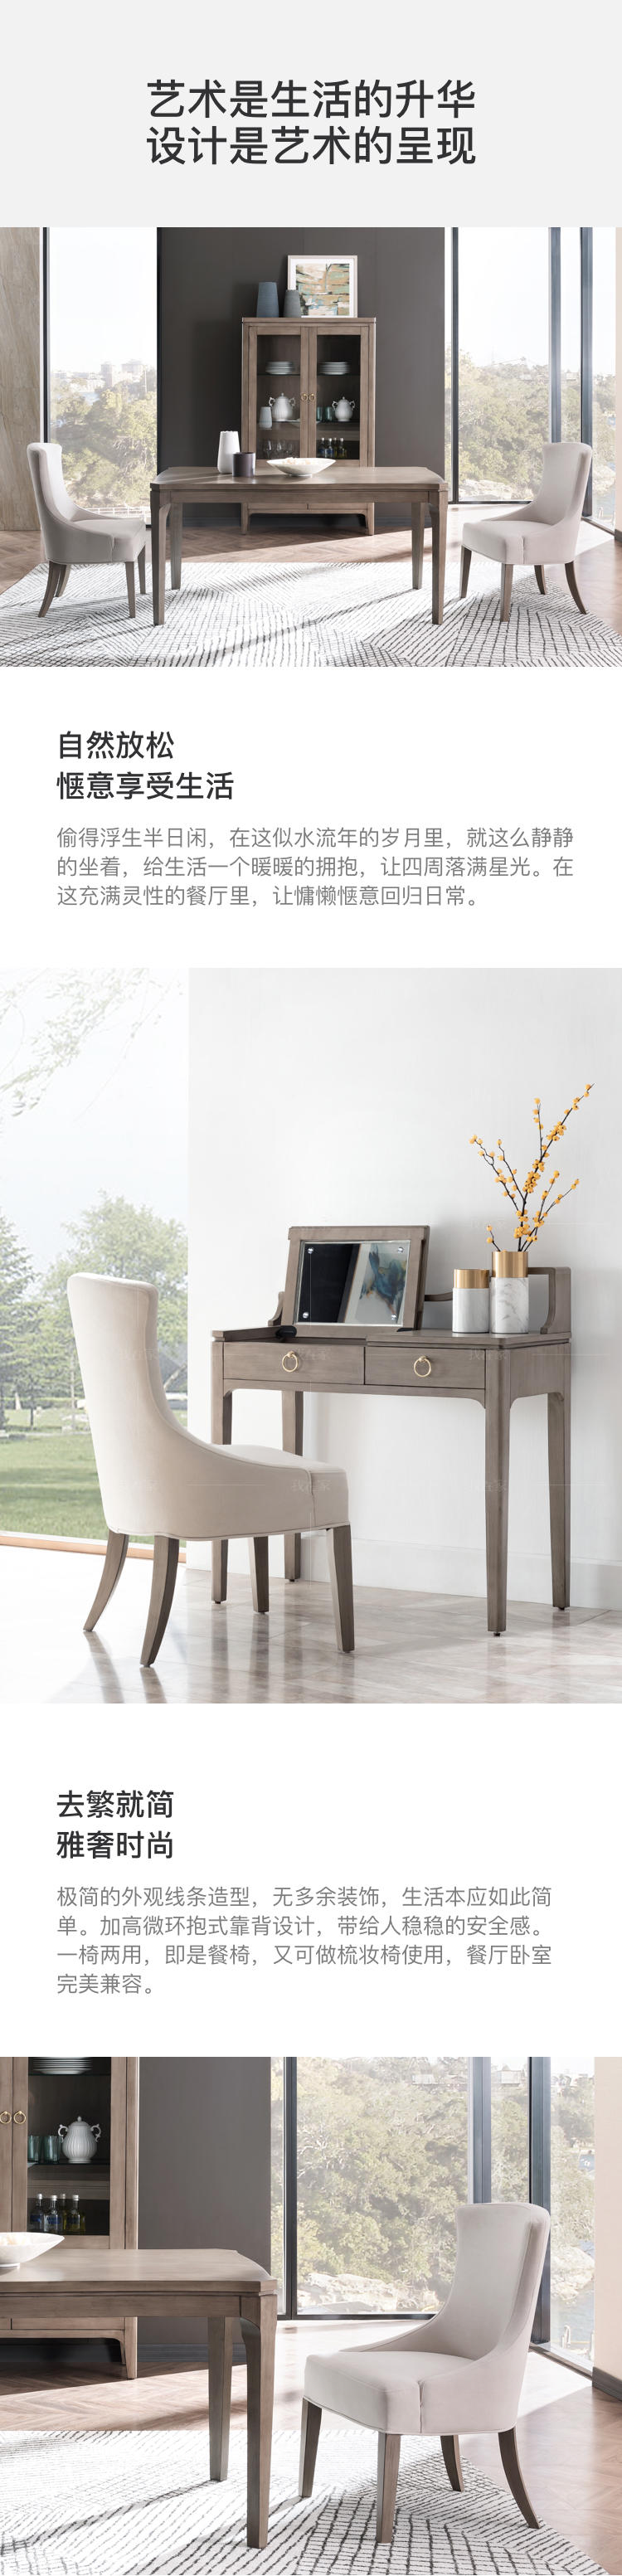 现代美式风格休斯顿餐椅的家具详细介绍